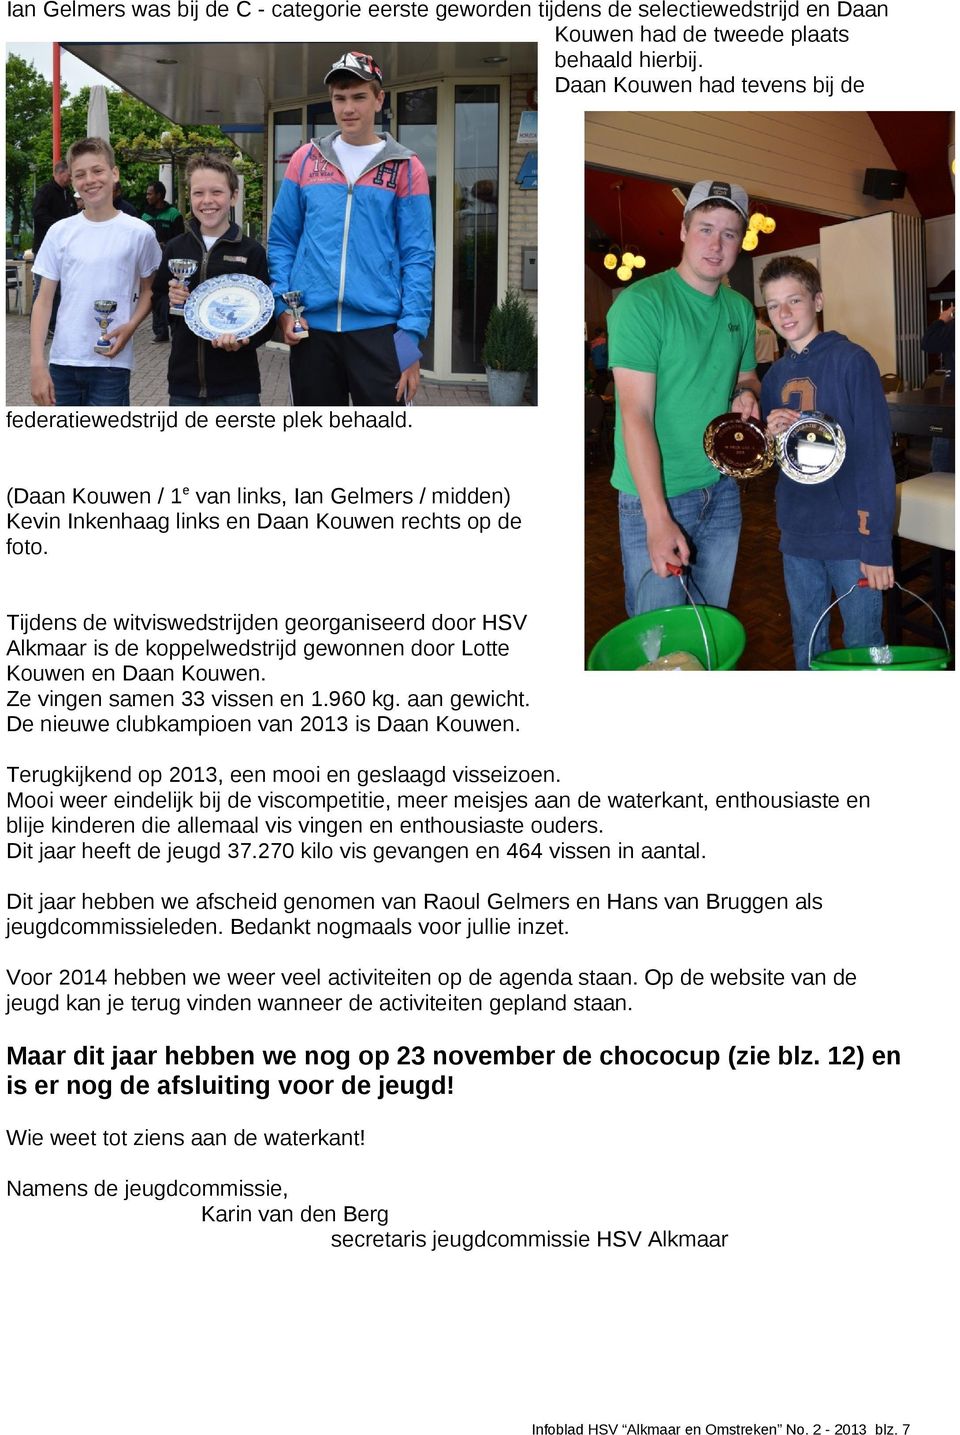 Tijdens de witviswedstrijden georganiseerd door HSV Alkmaar is de koppelwedstrijd gewonnen door Lotte Kouwen en Daan Kouwen. Ze vingen samen 33 vissen en 1.960 kg. aan gewicht.